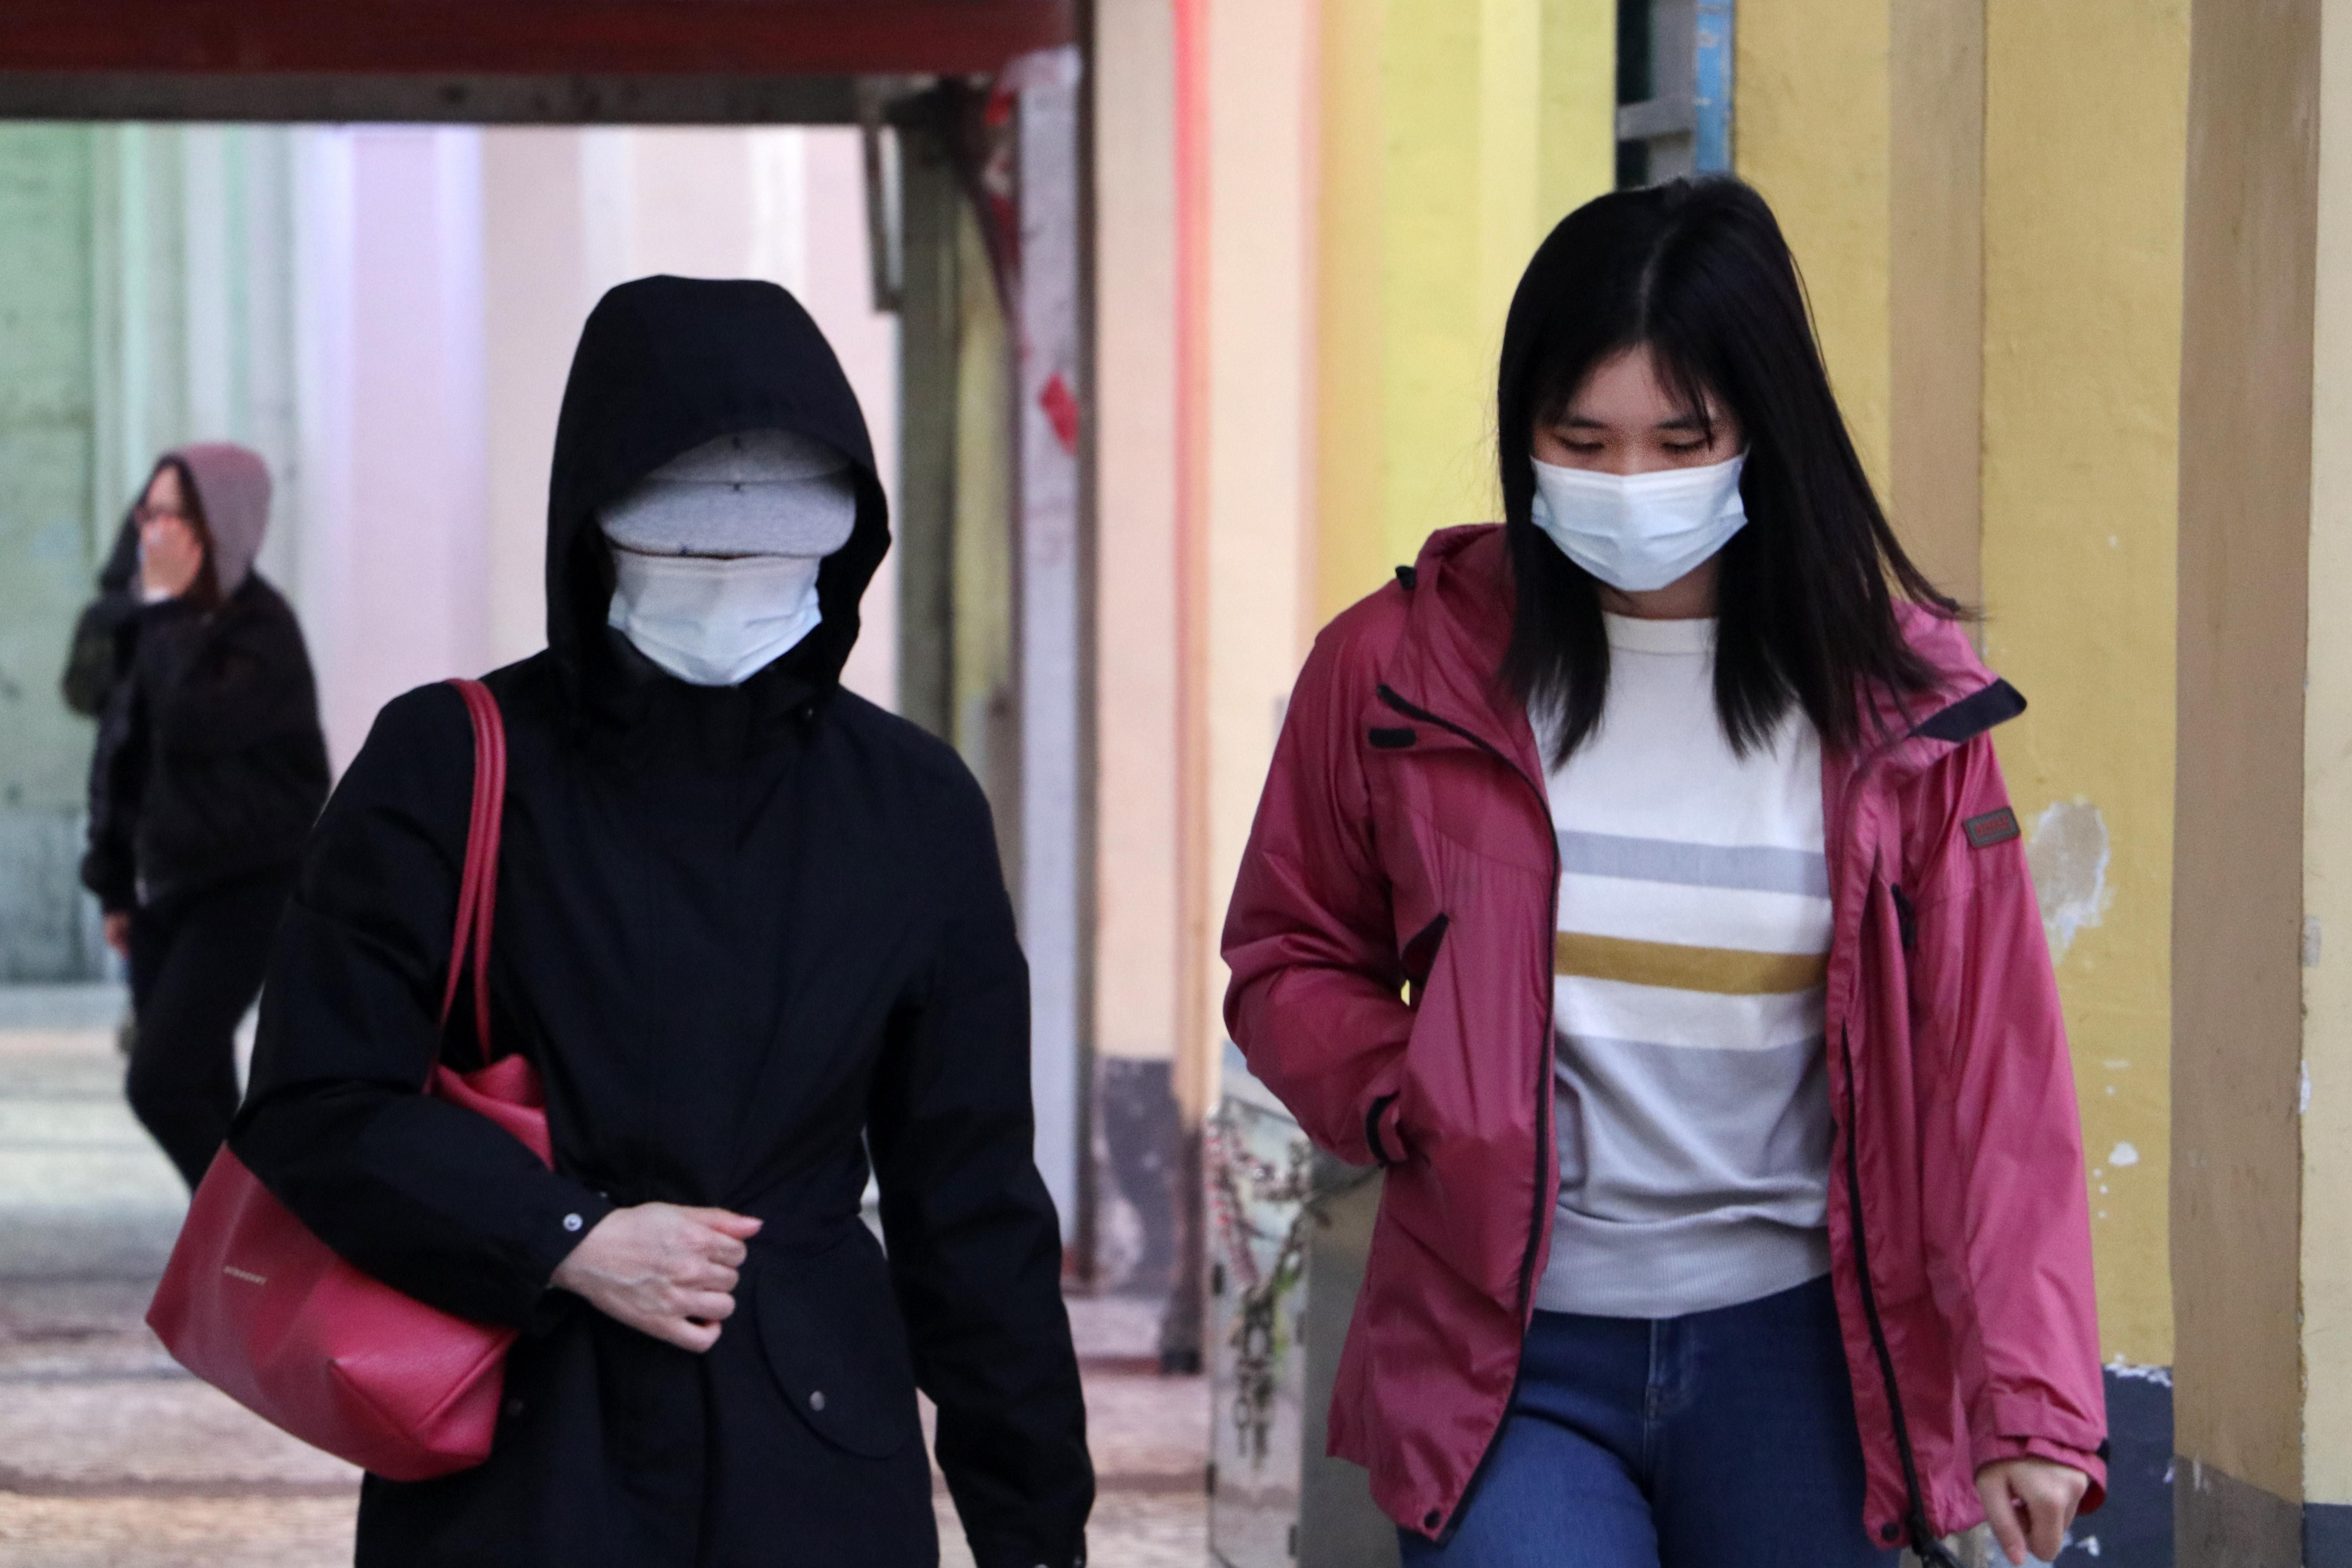 Работ проверяет, носят ли люди маски, Новости Техно 24